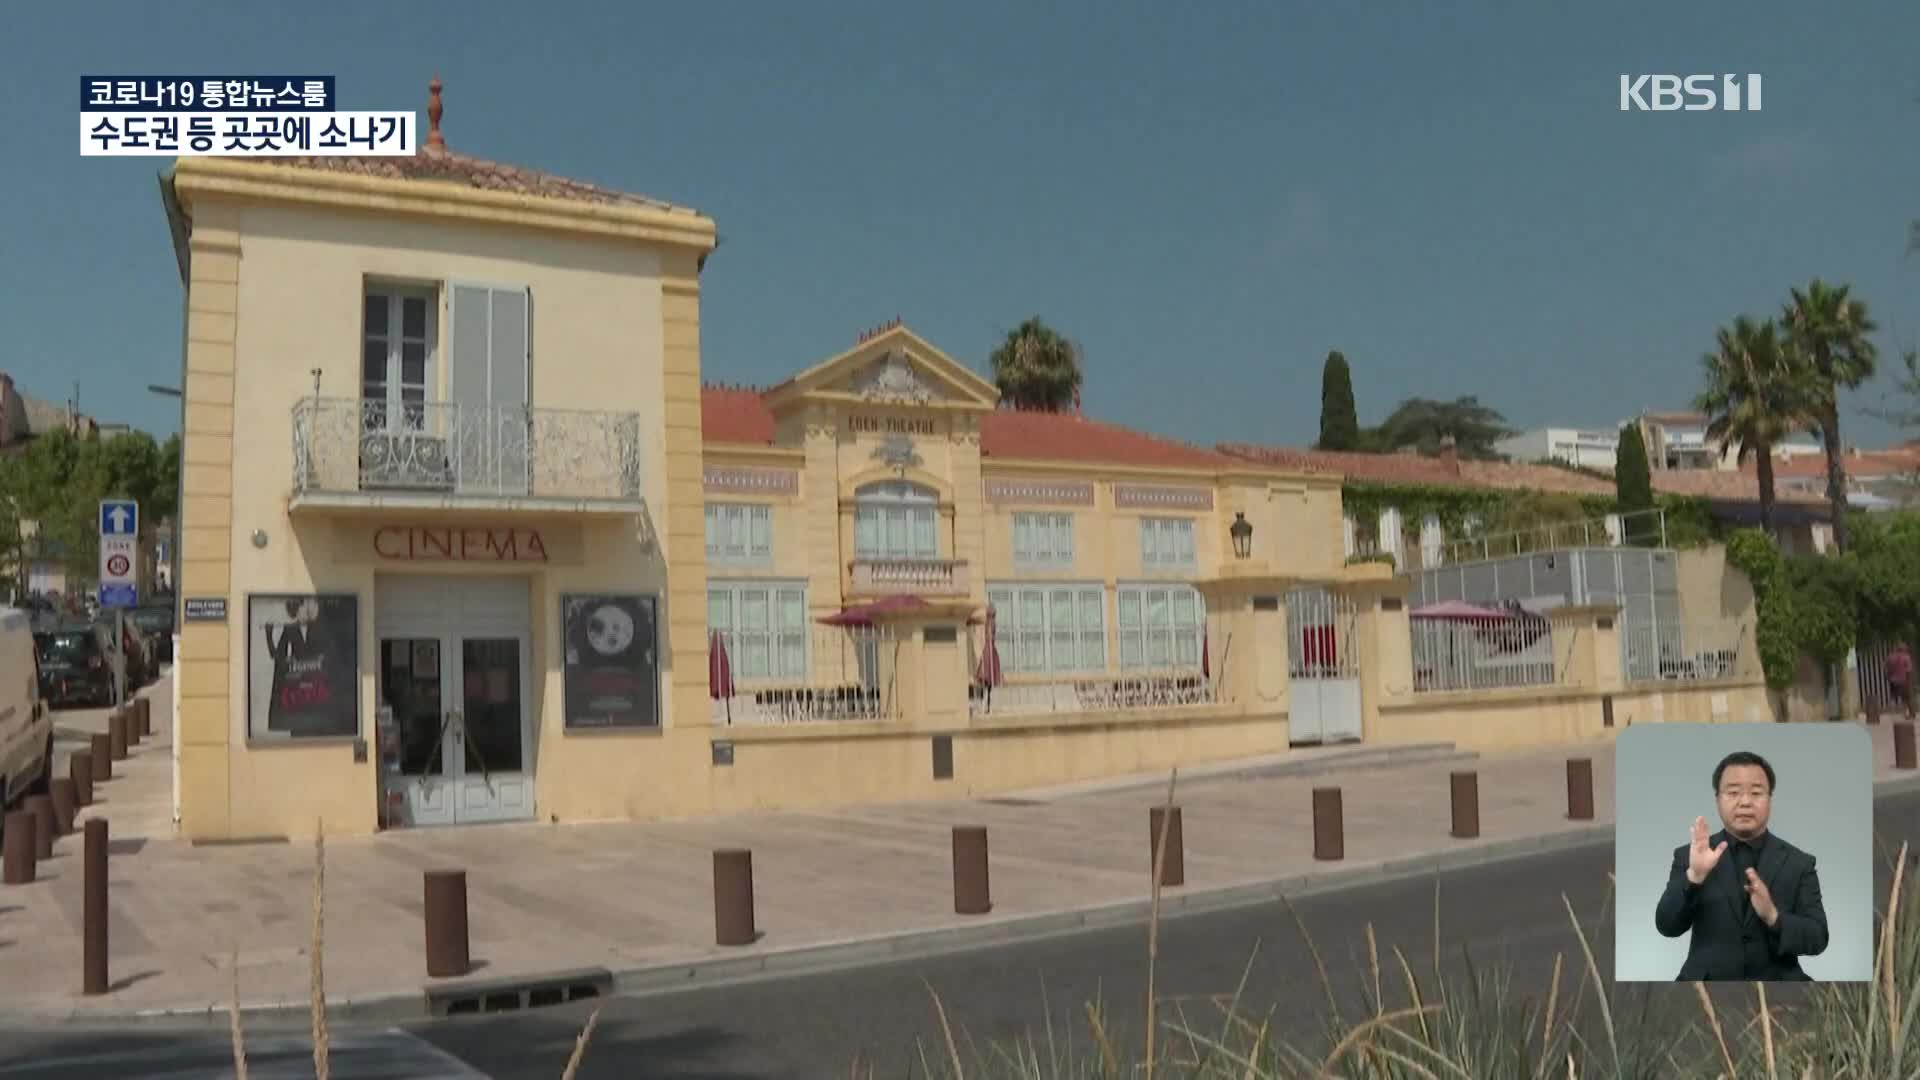 프랑스, 현존하는 가장 오래된 영화관 ‘에덴 극장’